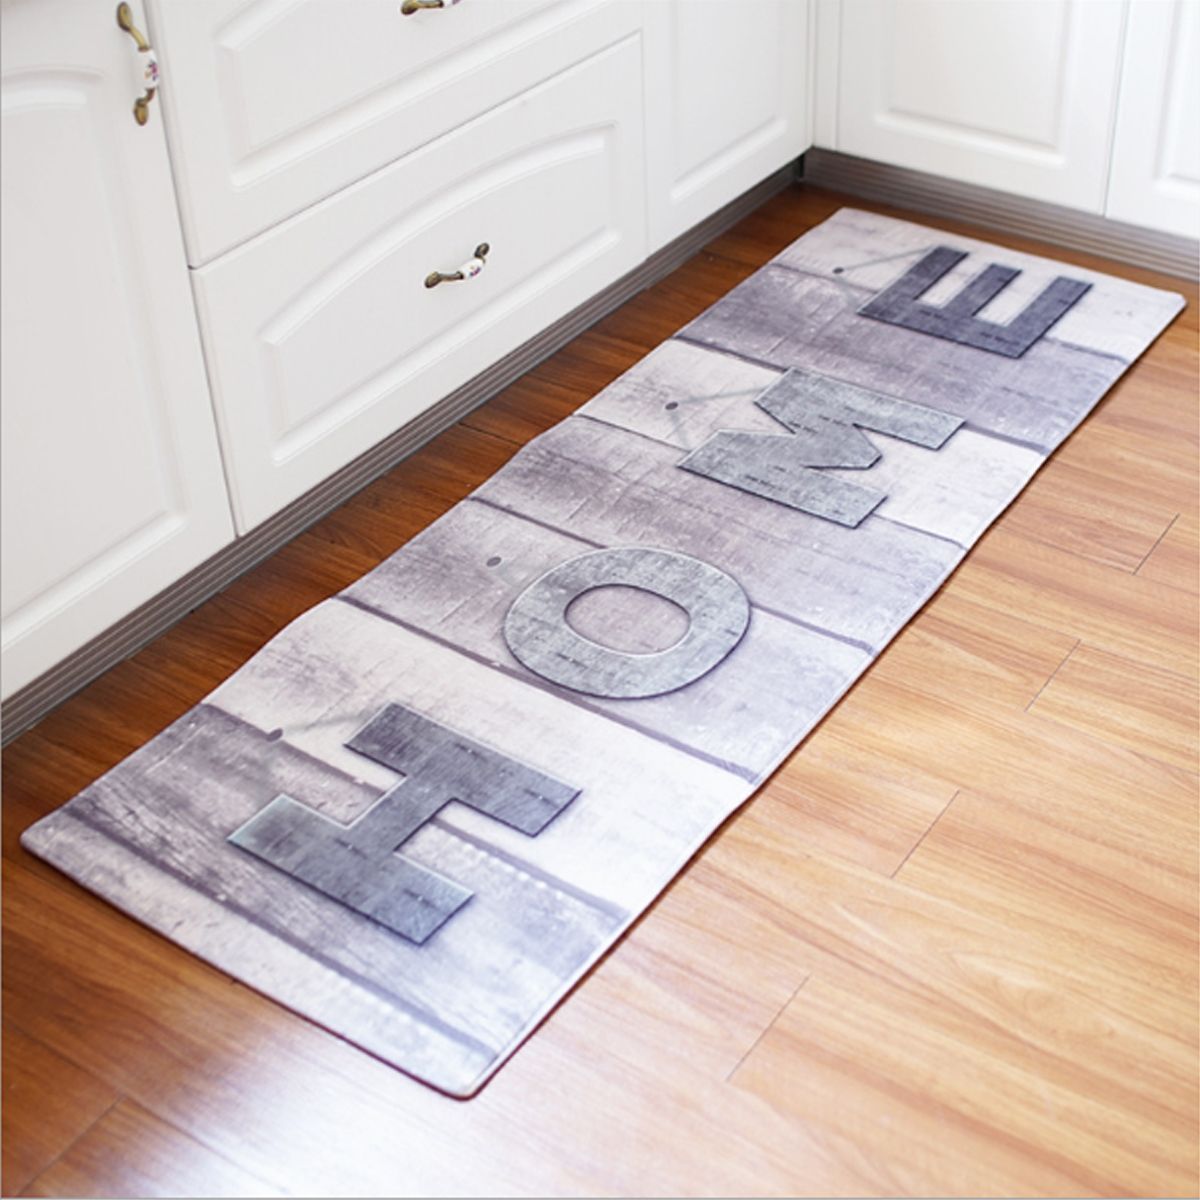 180cm-Non-Slip-Kitchen-Bathroom-Floor-Mat-Pad-Rug-Carpet-Doormat-Home-Indoor-Cushion-1563790